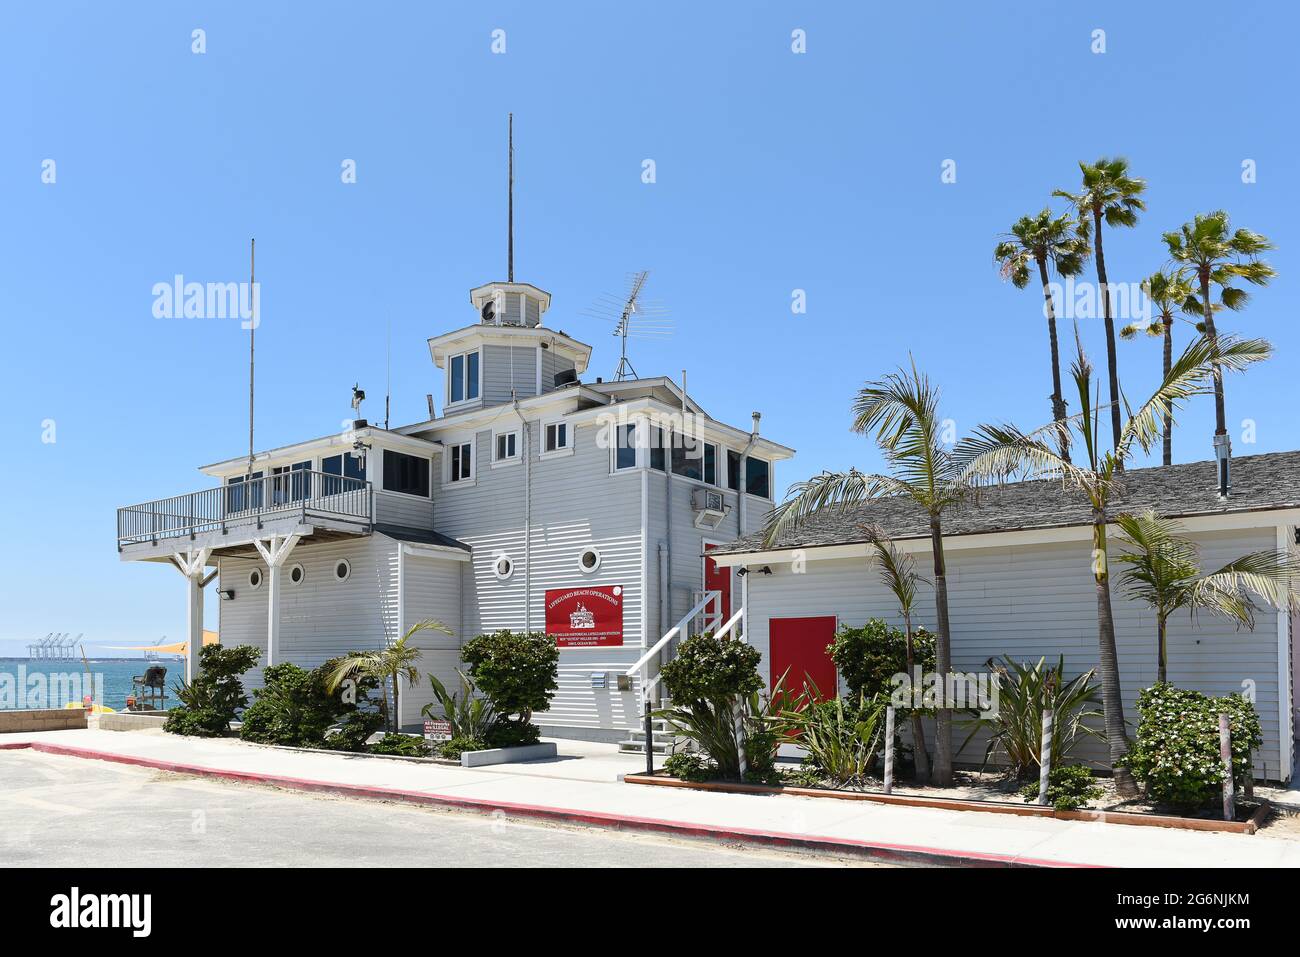 LONG BEACH, CALIFORNIA - 5 LUGLIO 2021: La storica stazione di Lifeguard Dutch Miller, sede della sede centrale della Long Beach Lifeguard. Foto Stock